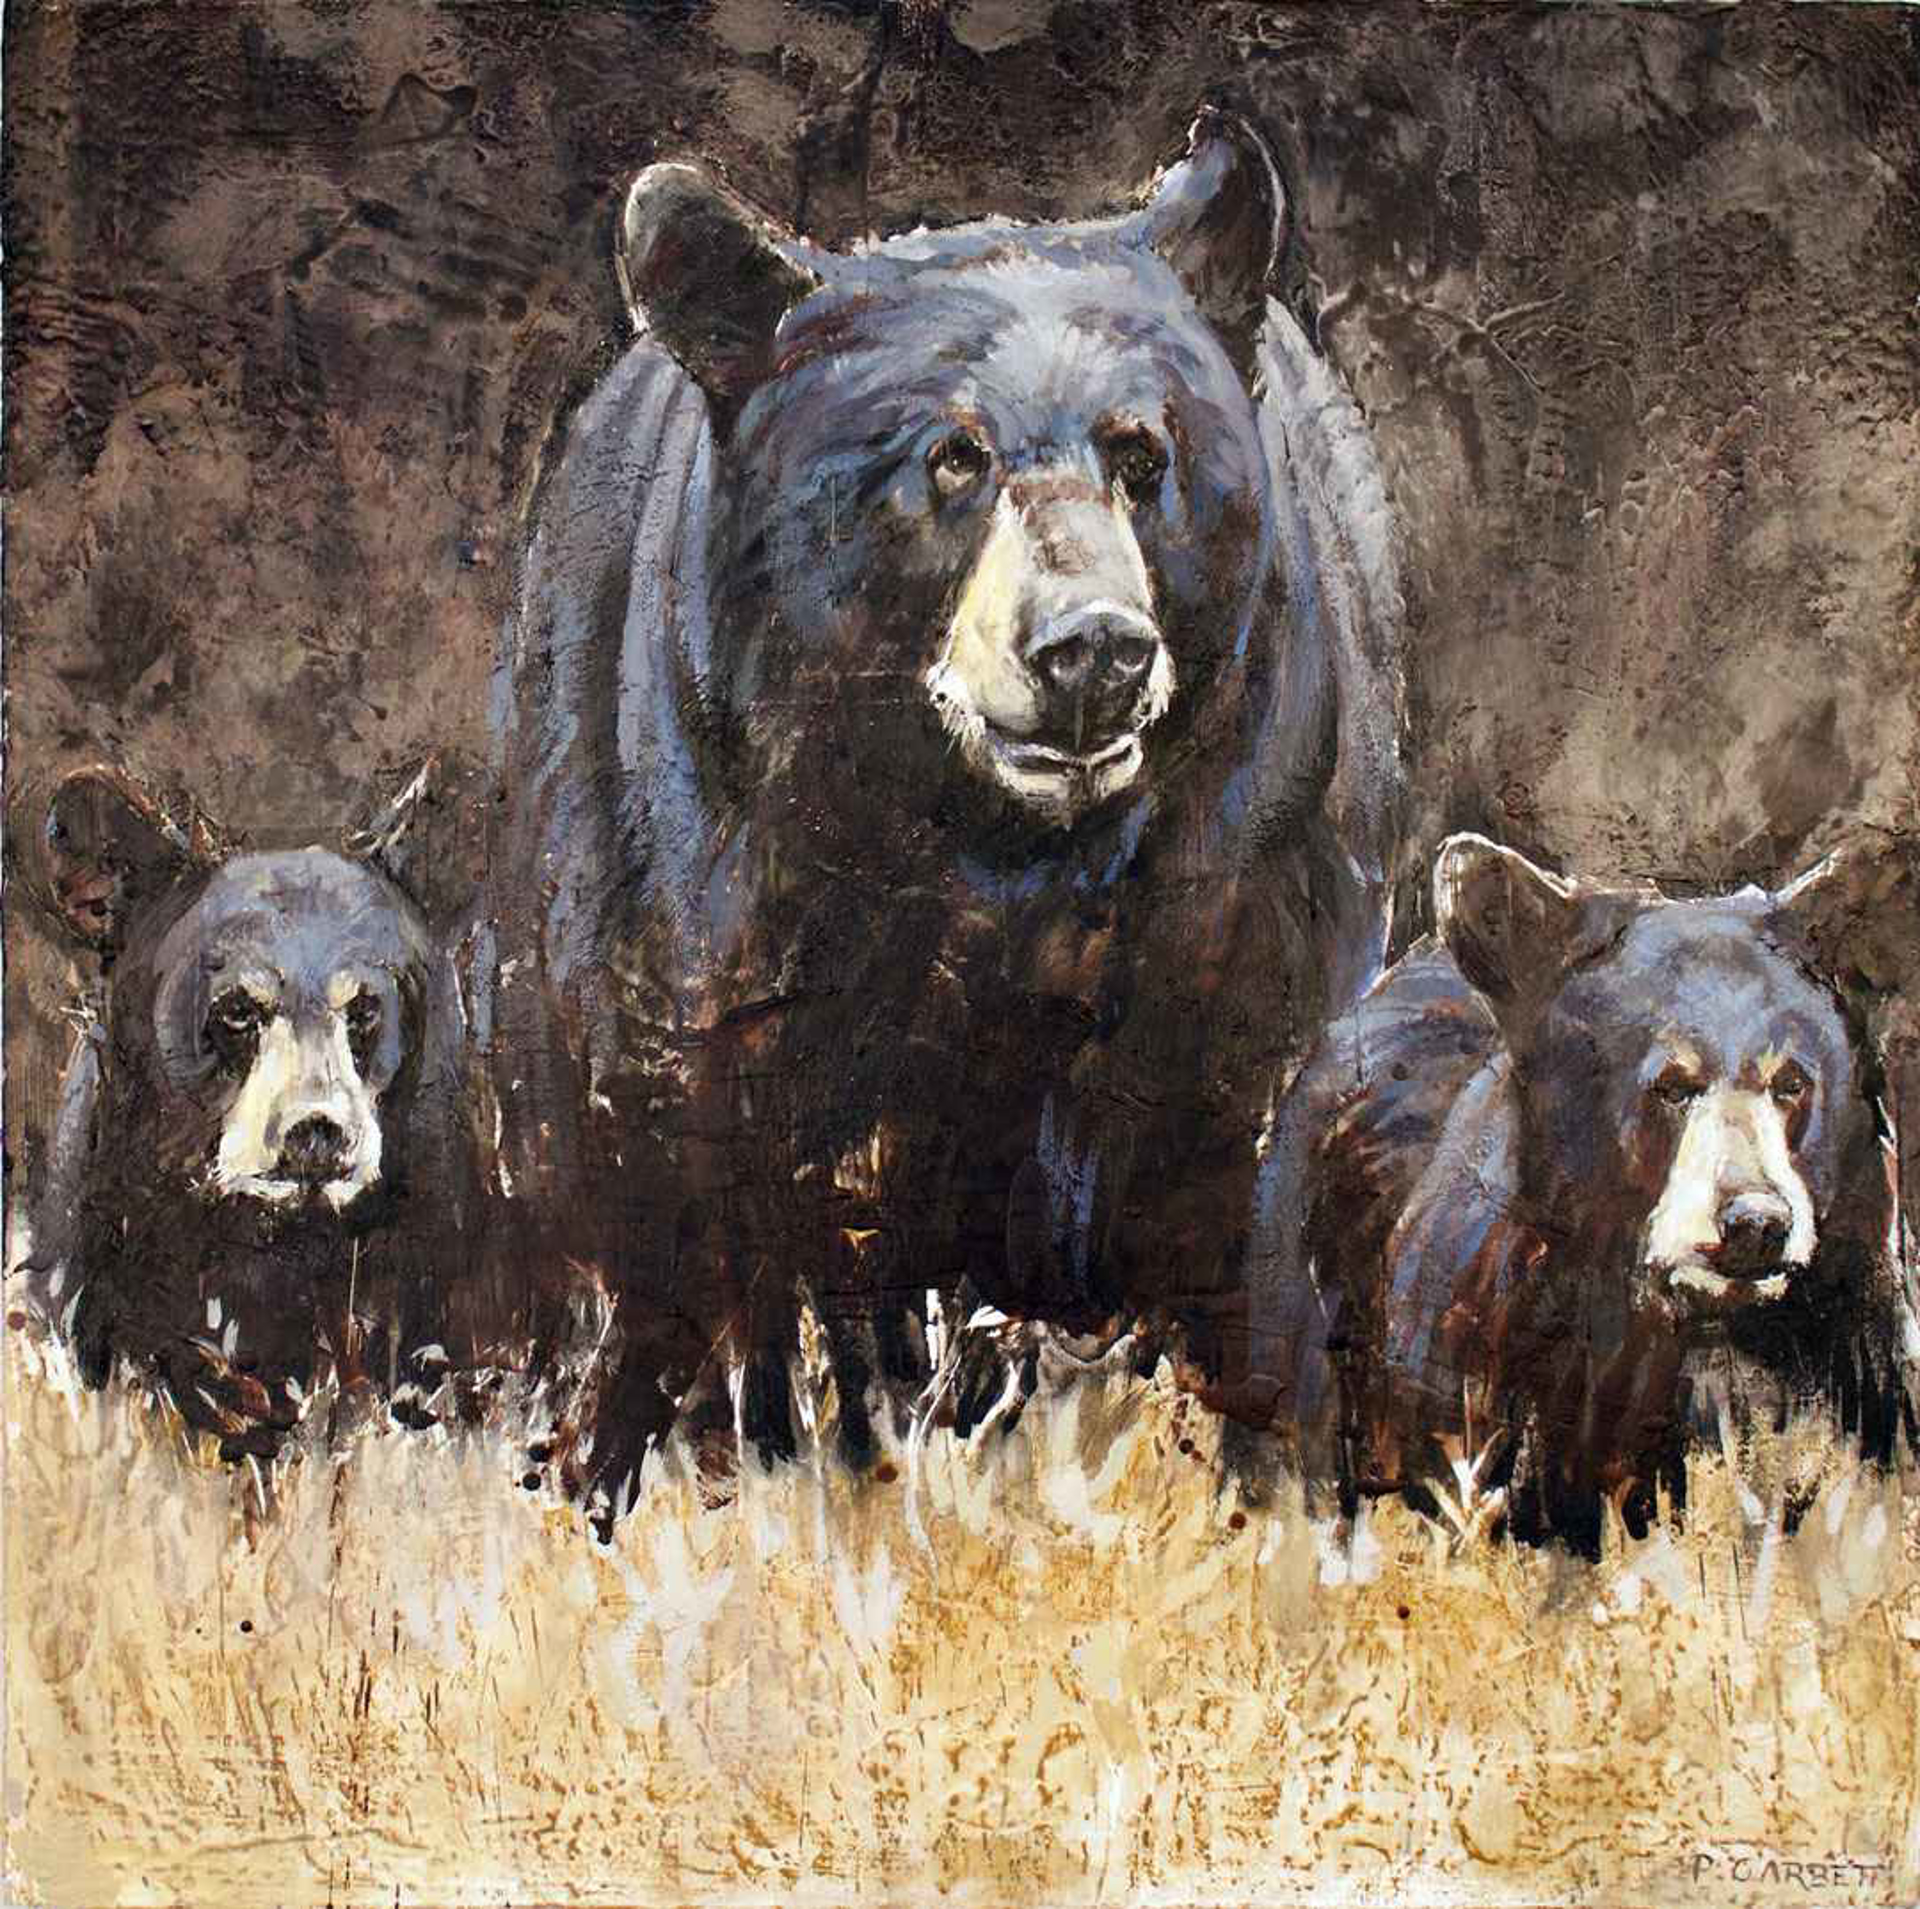 Mother & Cubs #61-15 by Paul Garbett